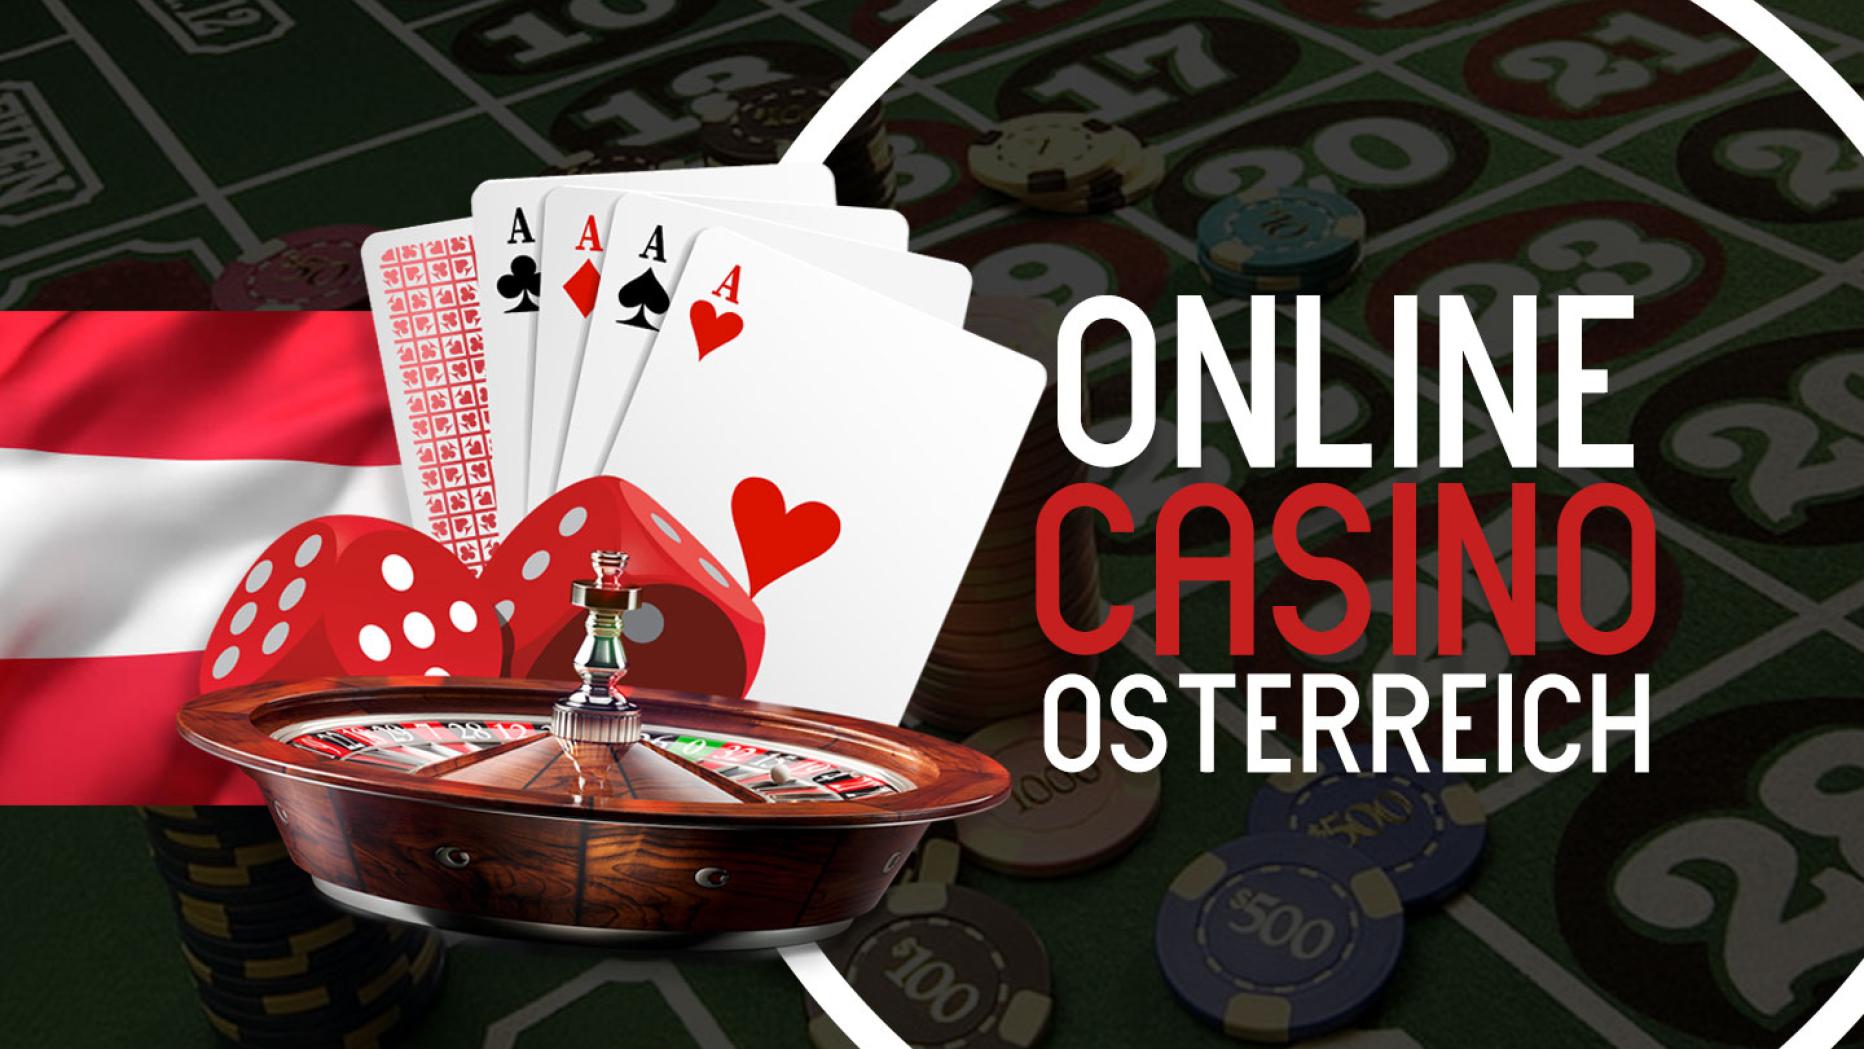 Manche Leute sind mit Online Casino ausgezeichnet und manche nicht - Welcher bist du?